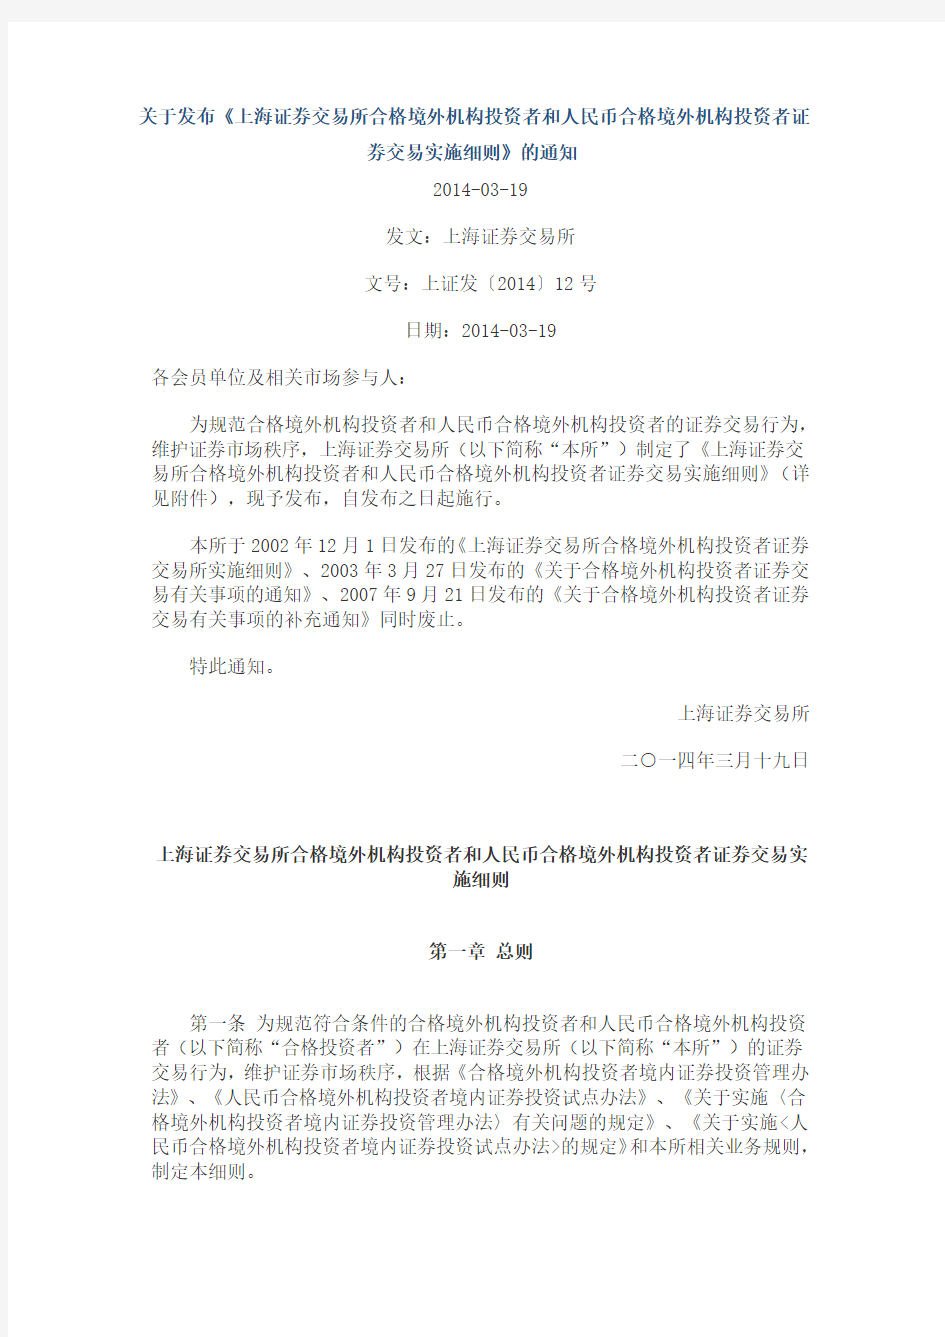 上海证券交易所合格境外机构投资者和人民币合格境外机构投资者证券交易实施细则2014-03-19